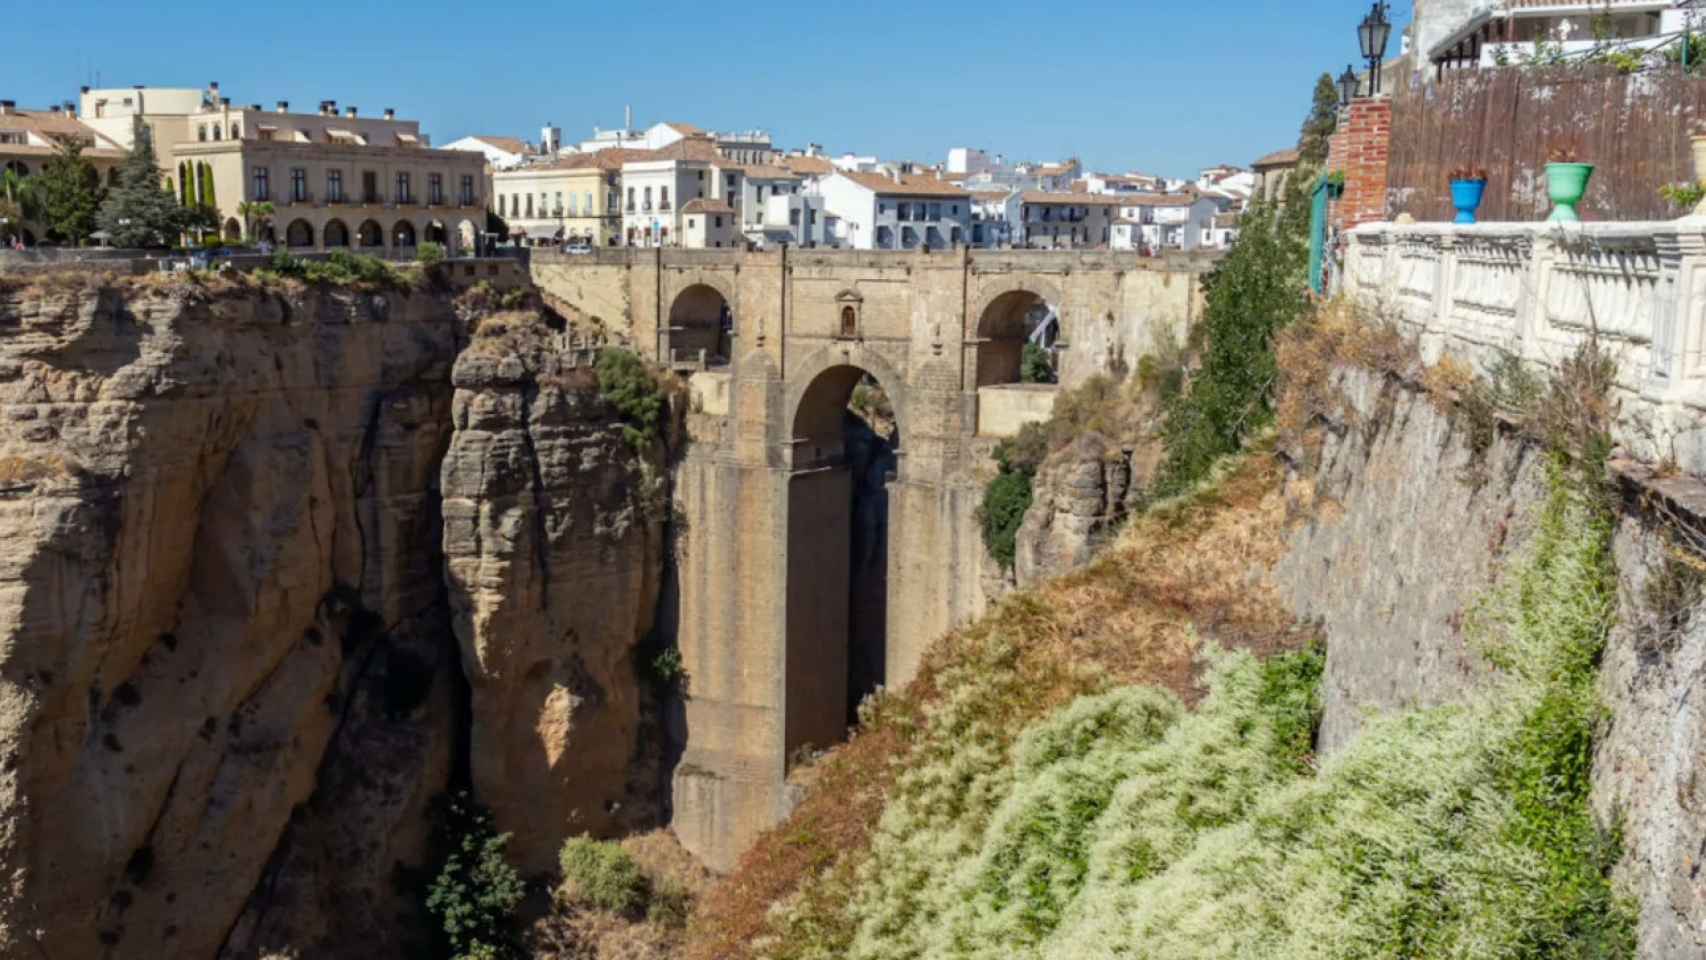 Imagen de la ciudad de Ronda, en Málaga.